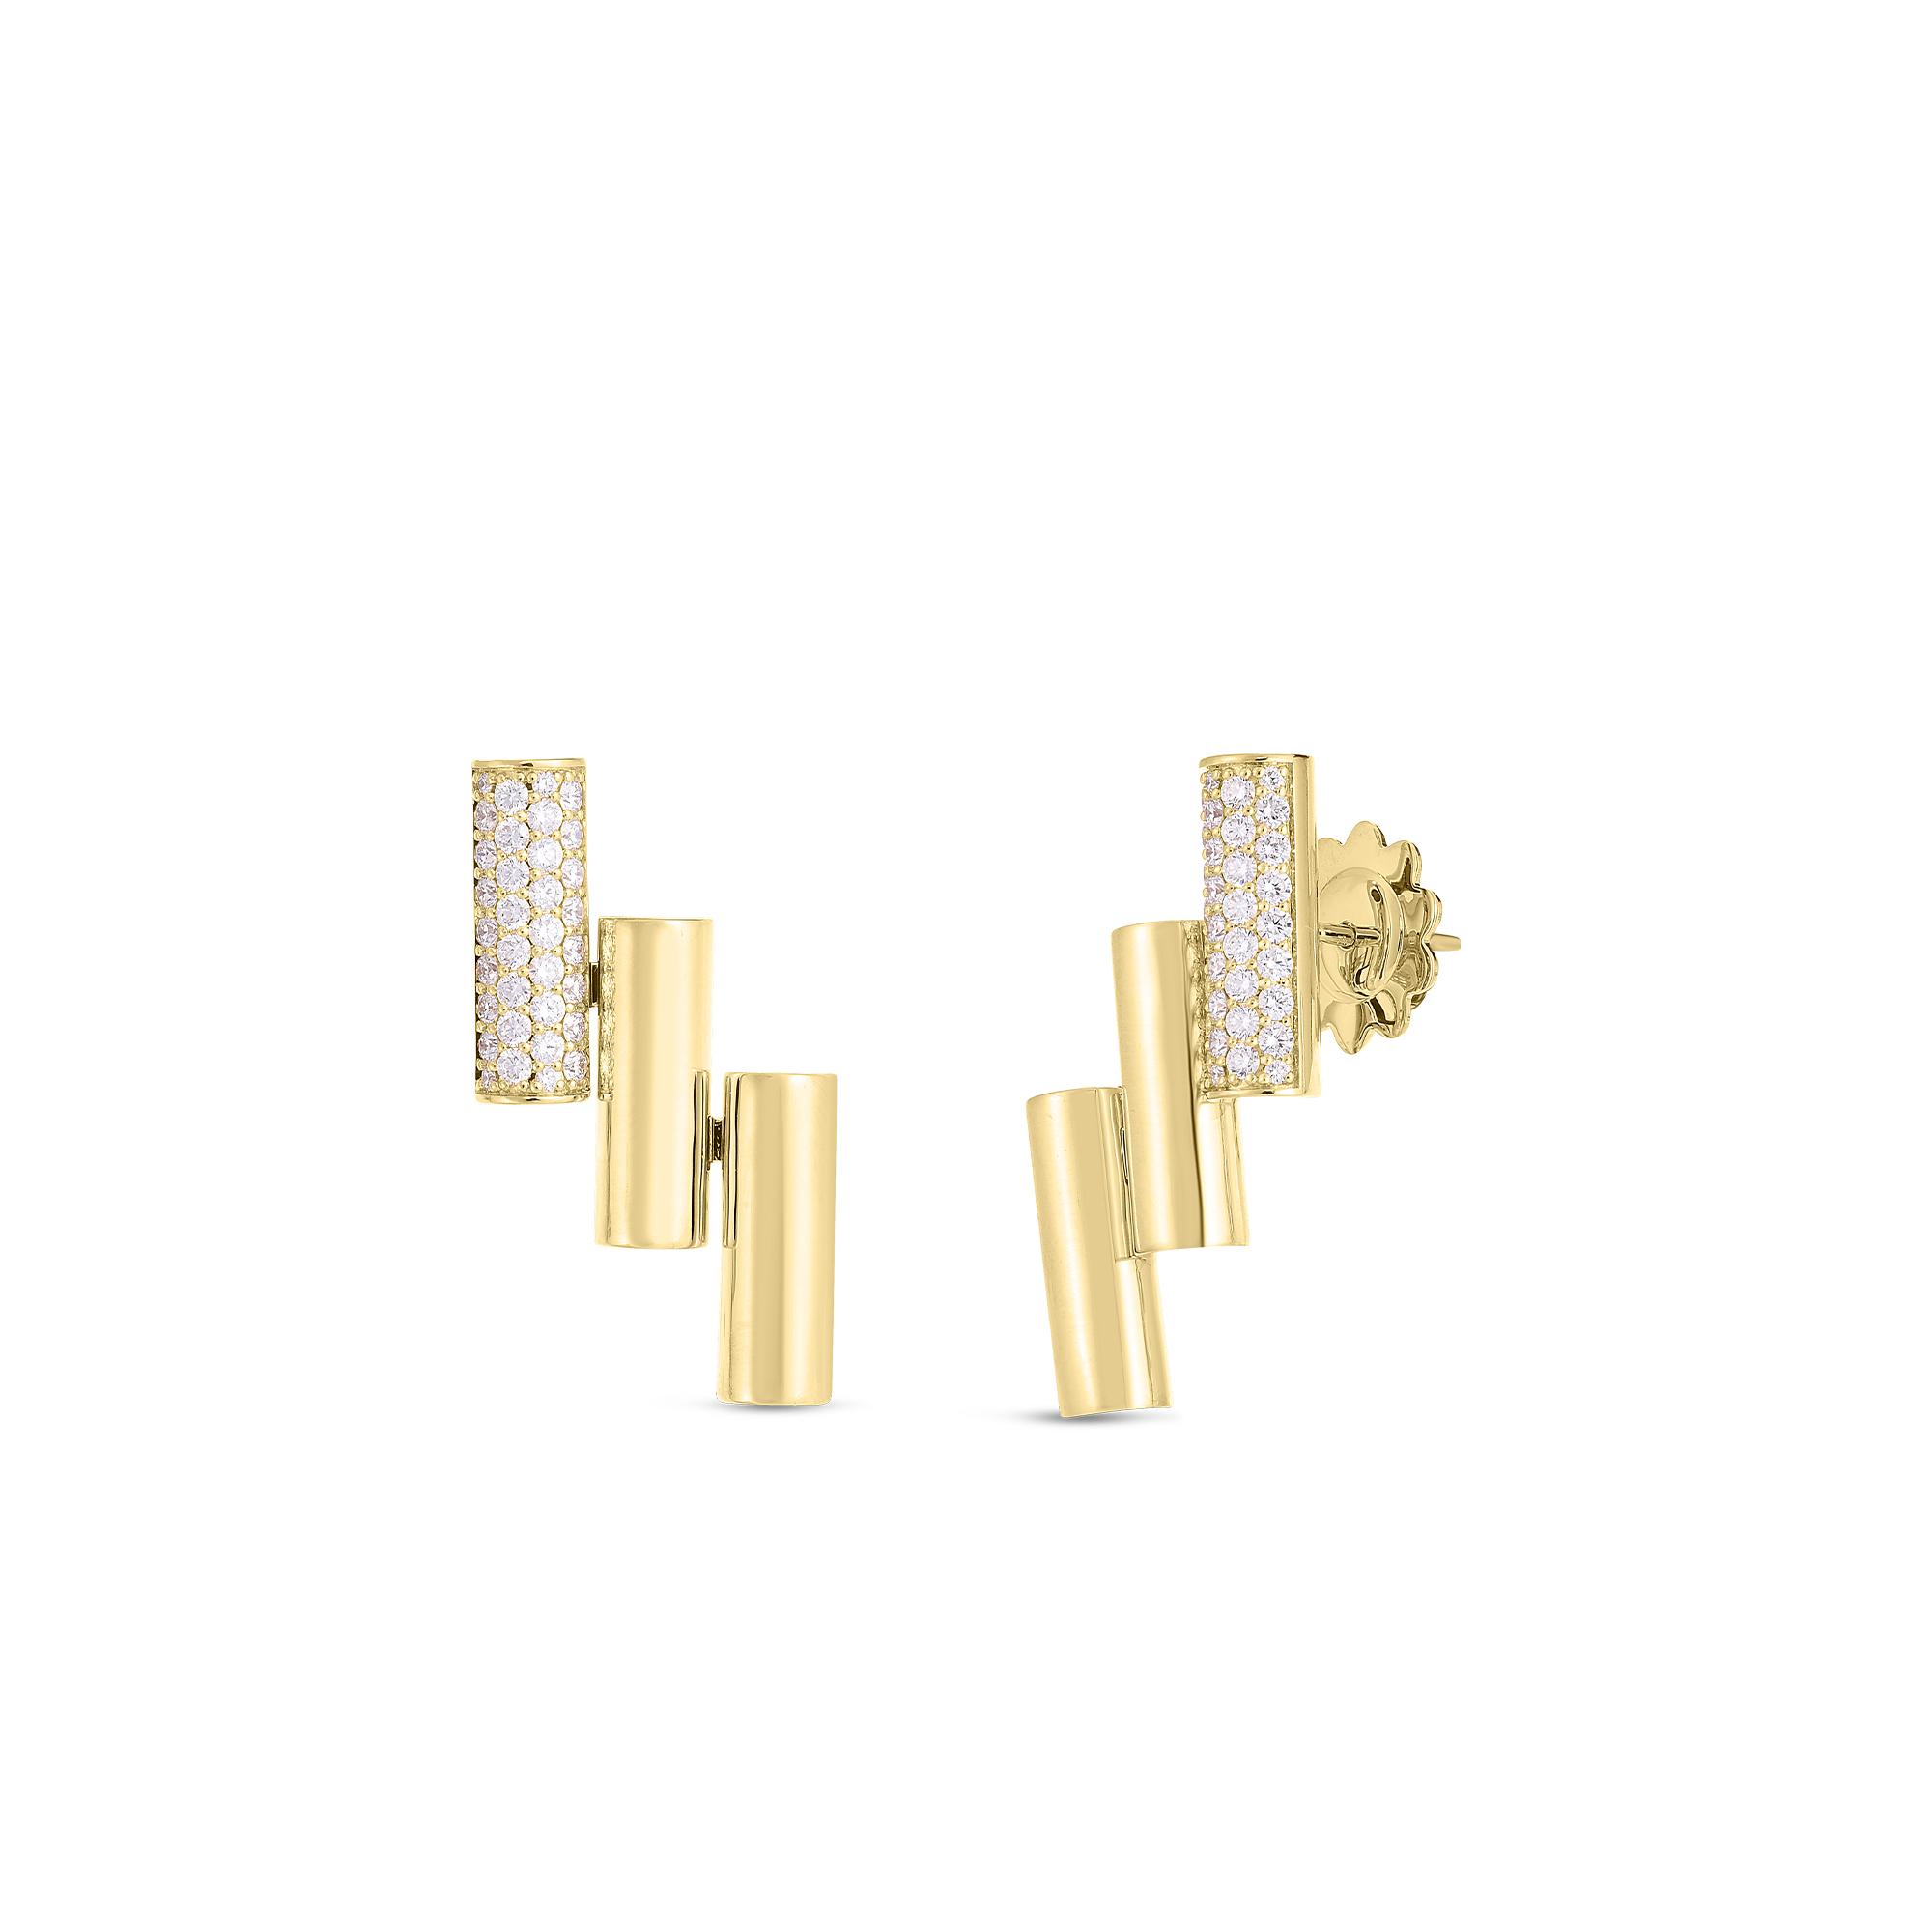 Roberto Coin Domino Cascade Earrings with Diamonds